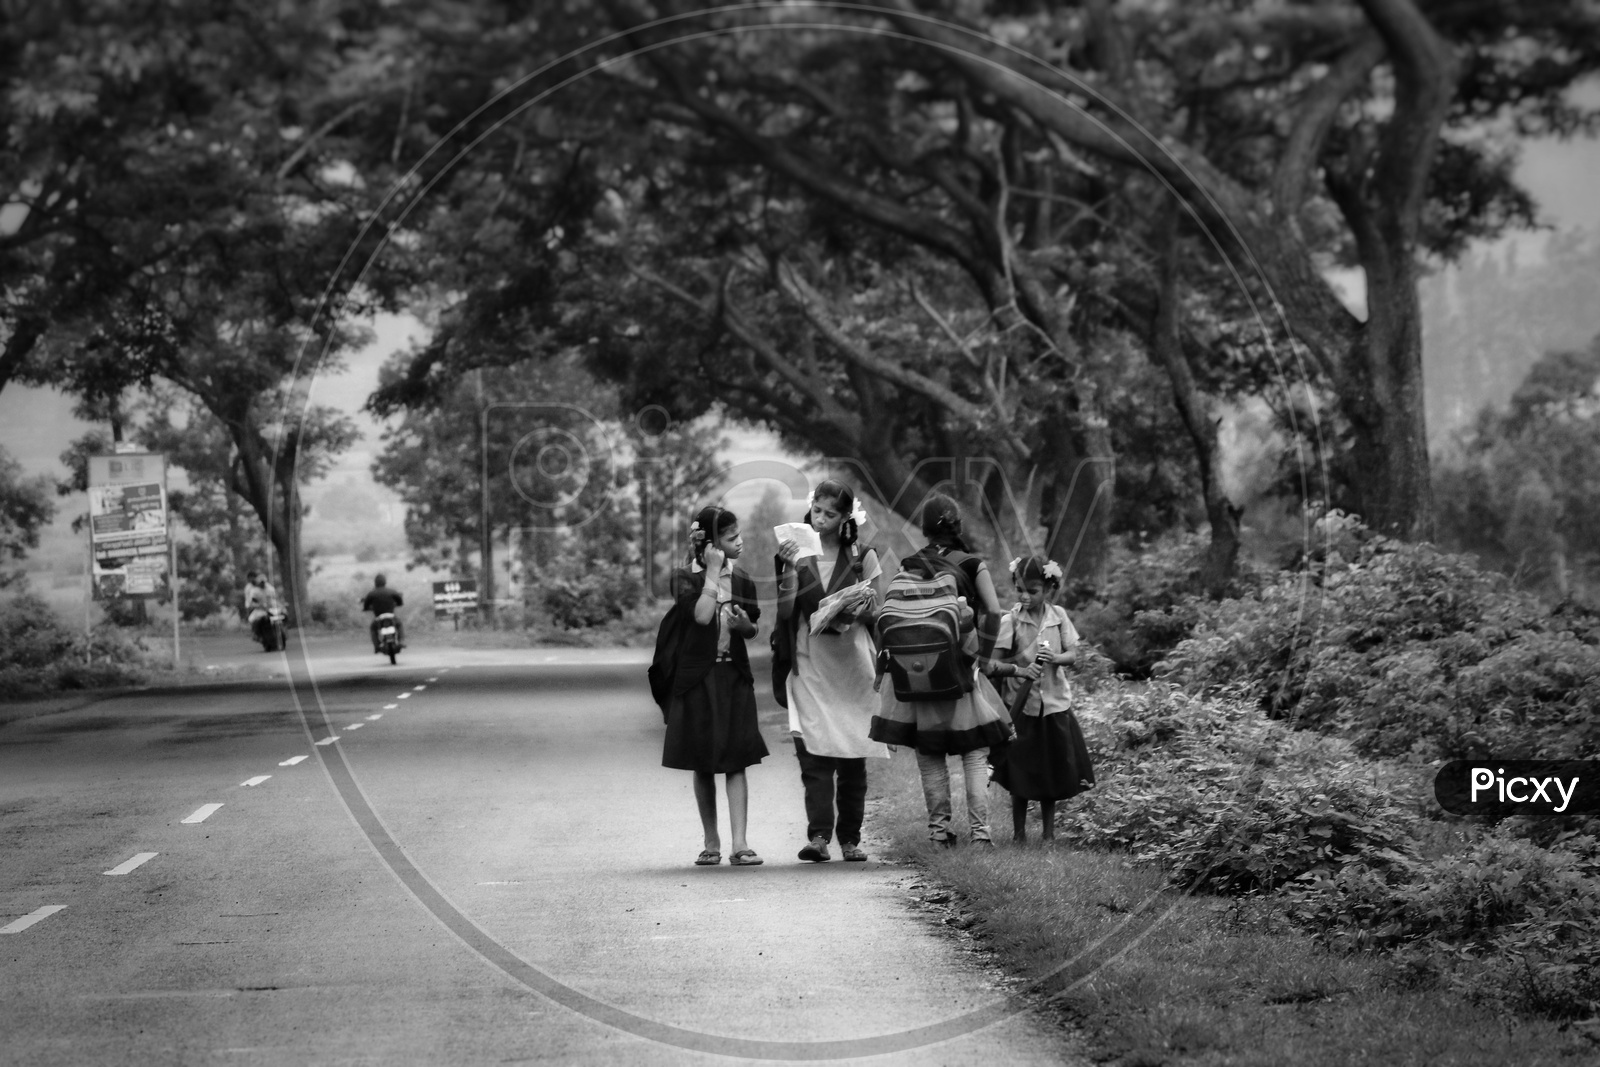 School girls going to school on road